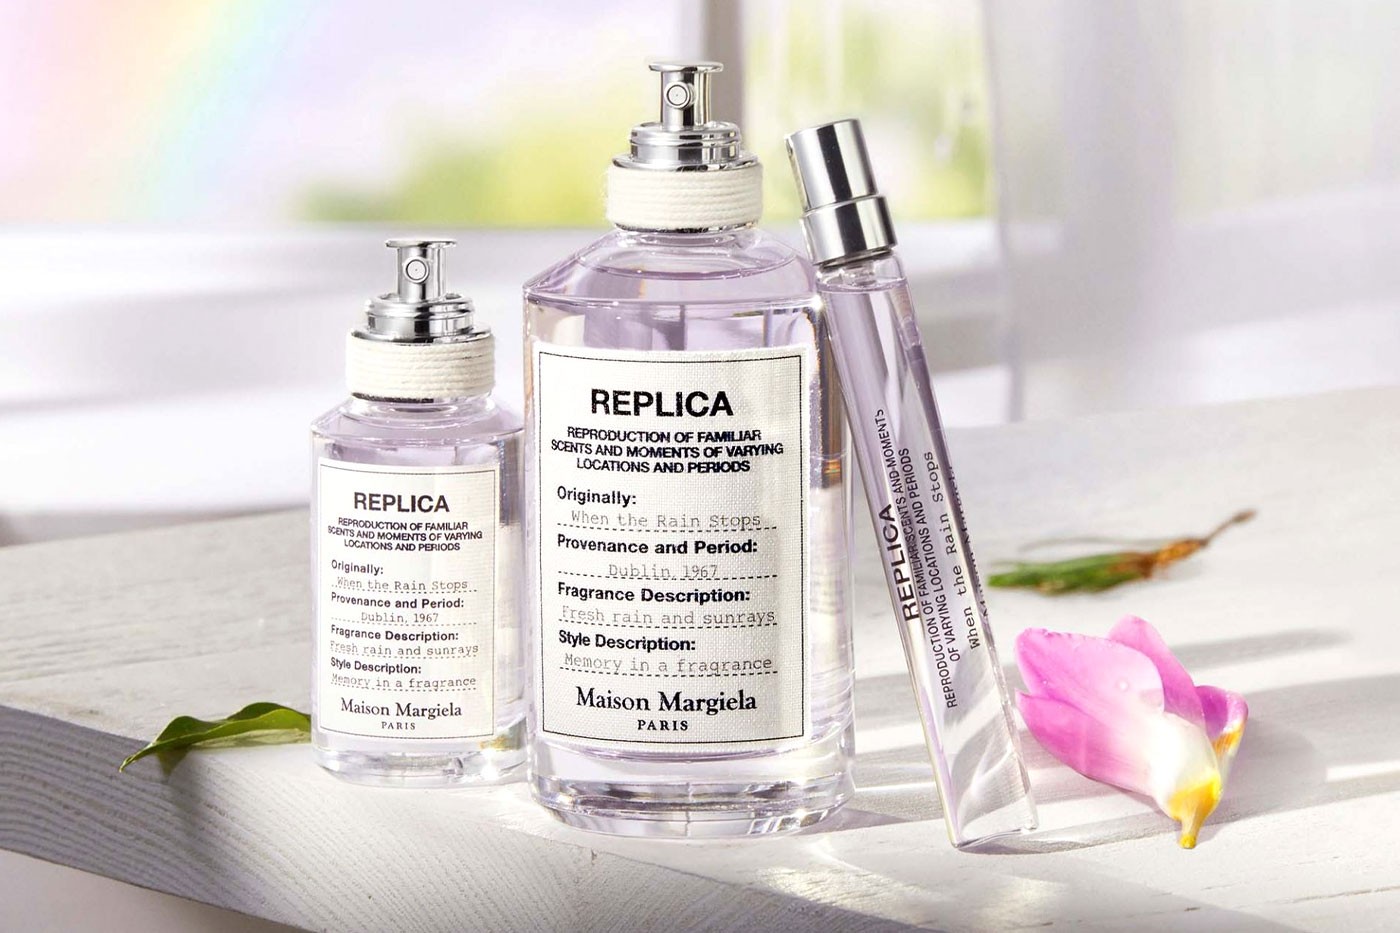 Maison Margiela посвятил новый аромат весеннему дождю (фото 1)